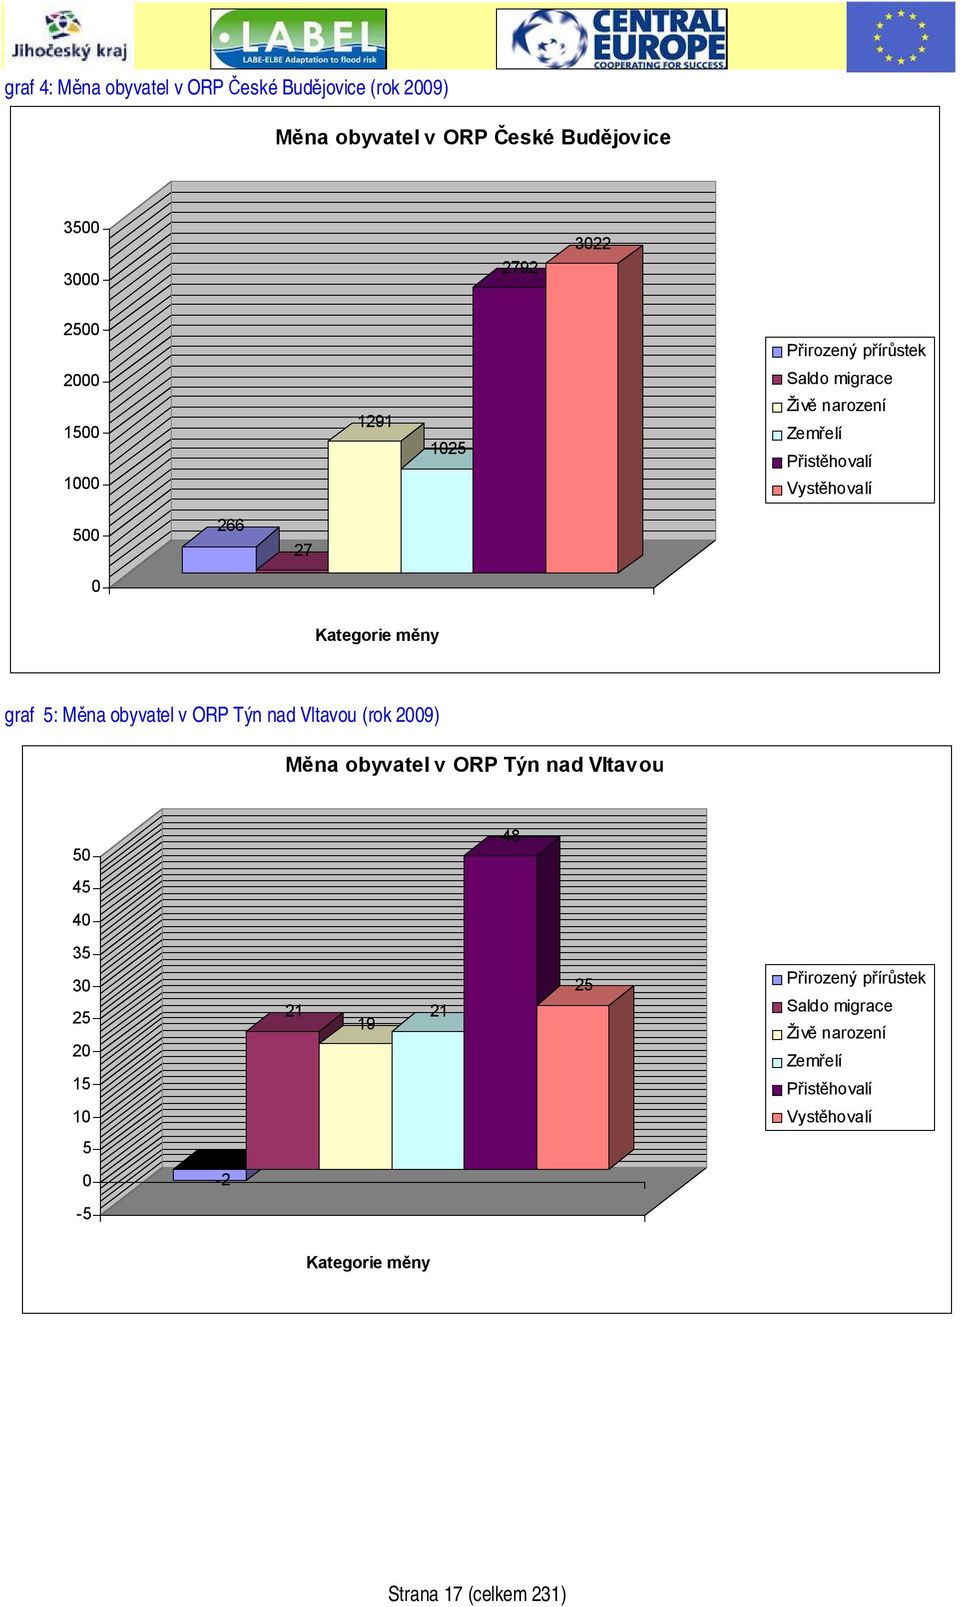 graf 5: Měna obyvatel v ORP Týn nad Vltavou (rok 2009) Měna obyvatel v ORP Týn nad Vltavou 50 48 45 40 35 30 25 20 15 21 19 21